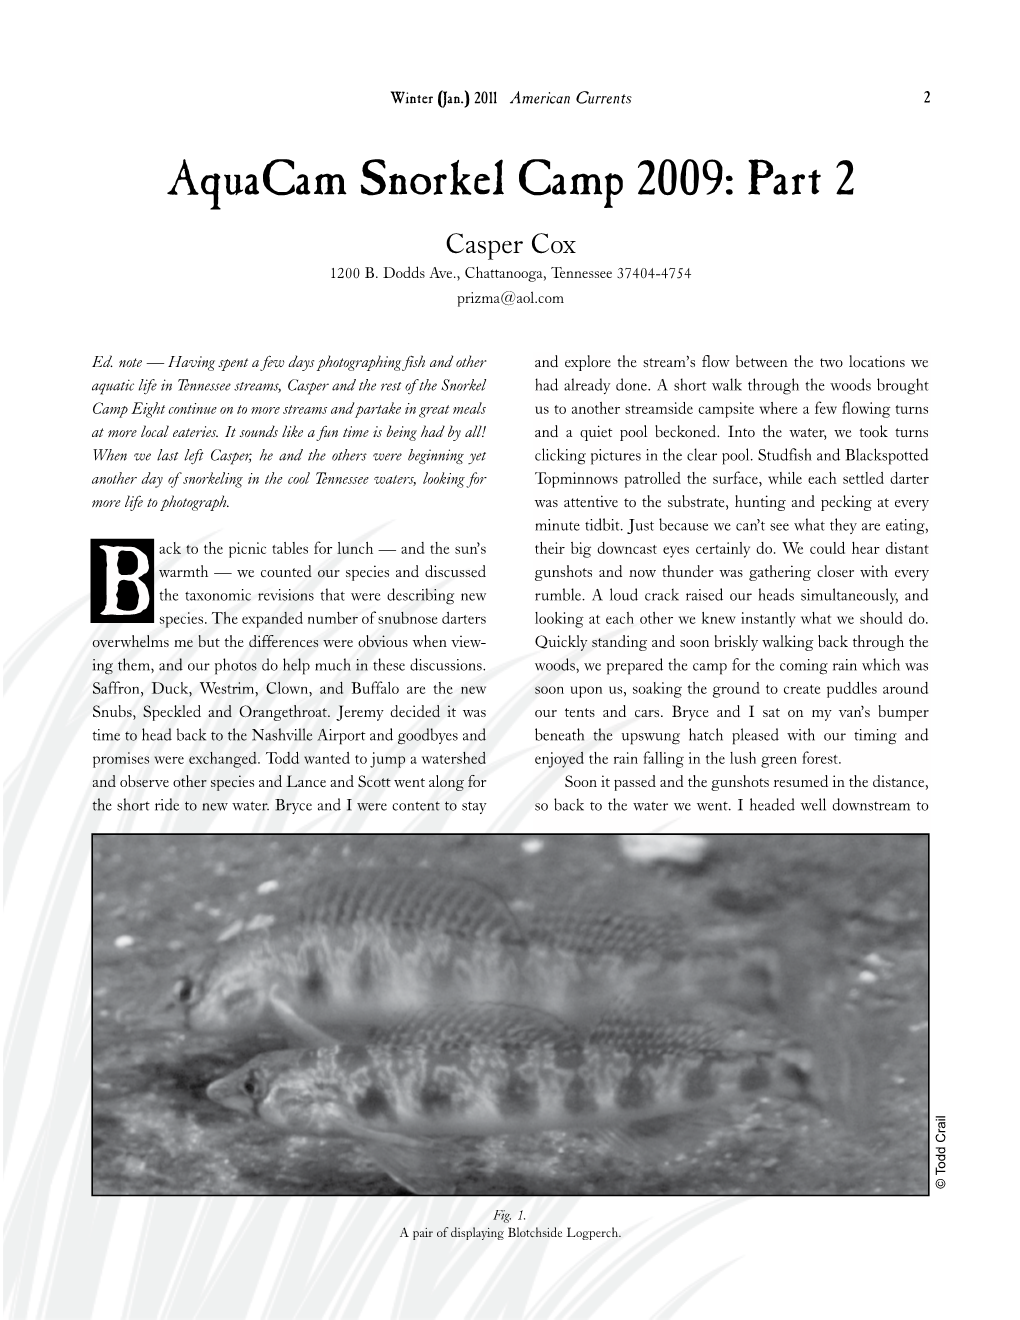 Aquacam Snorkel Camp 2009: Part 2 Casper Cox 1200 B